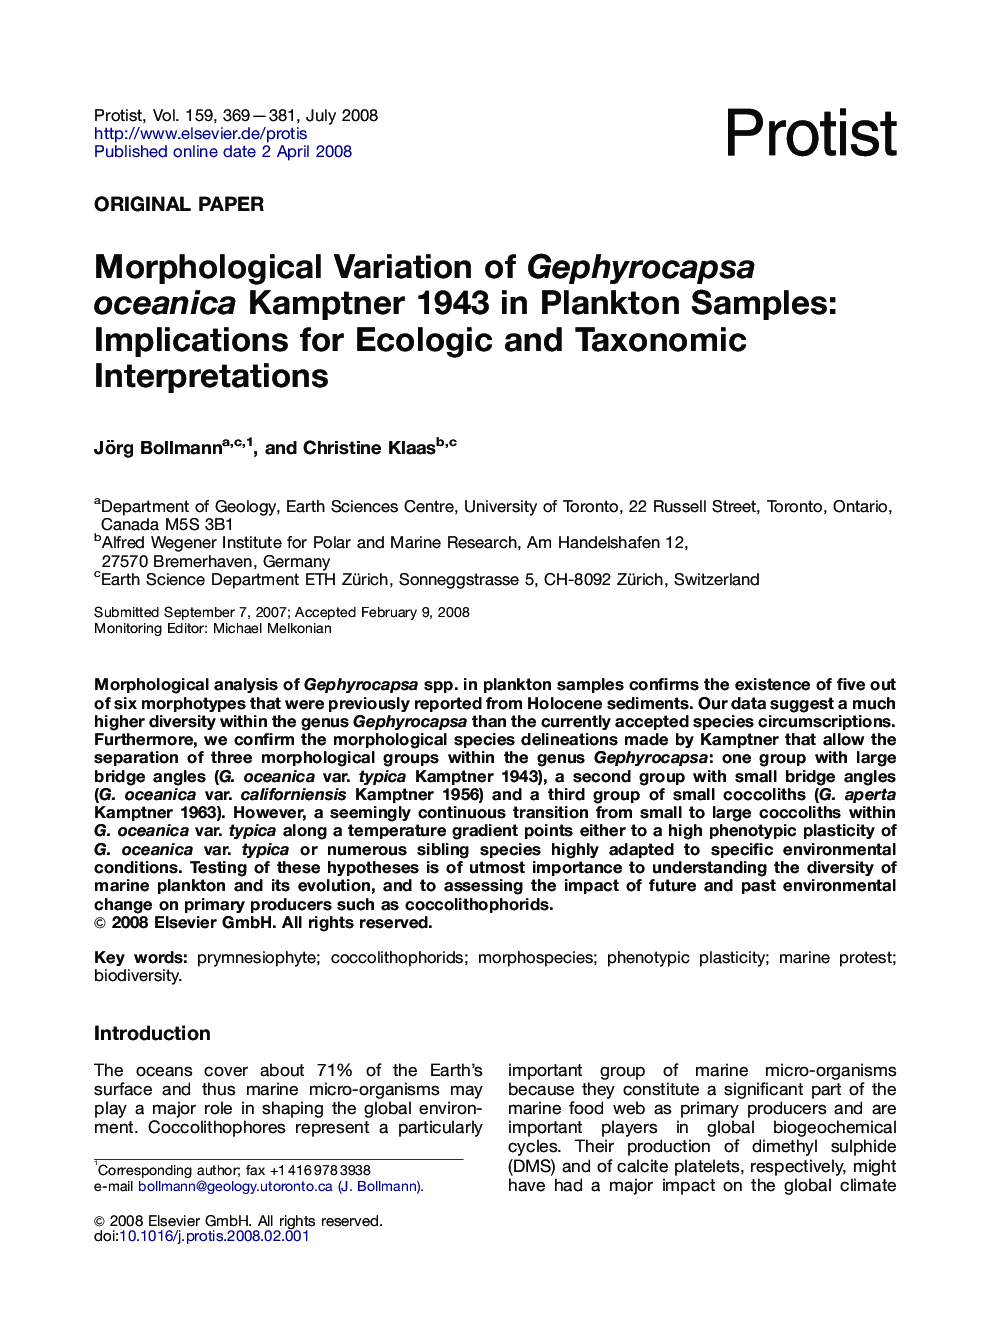 Morphological Variation of Gephyrocapsa oceanica Kamptner 1943 in Plankton Samples: Implications for Ecologic and Taxonomic Interpretations